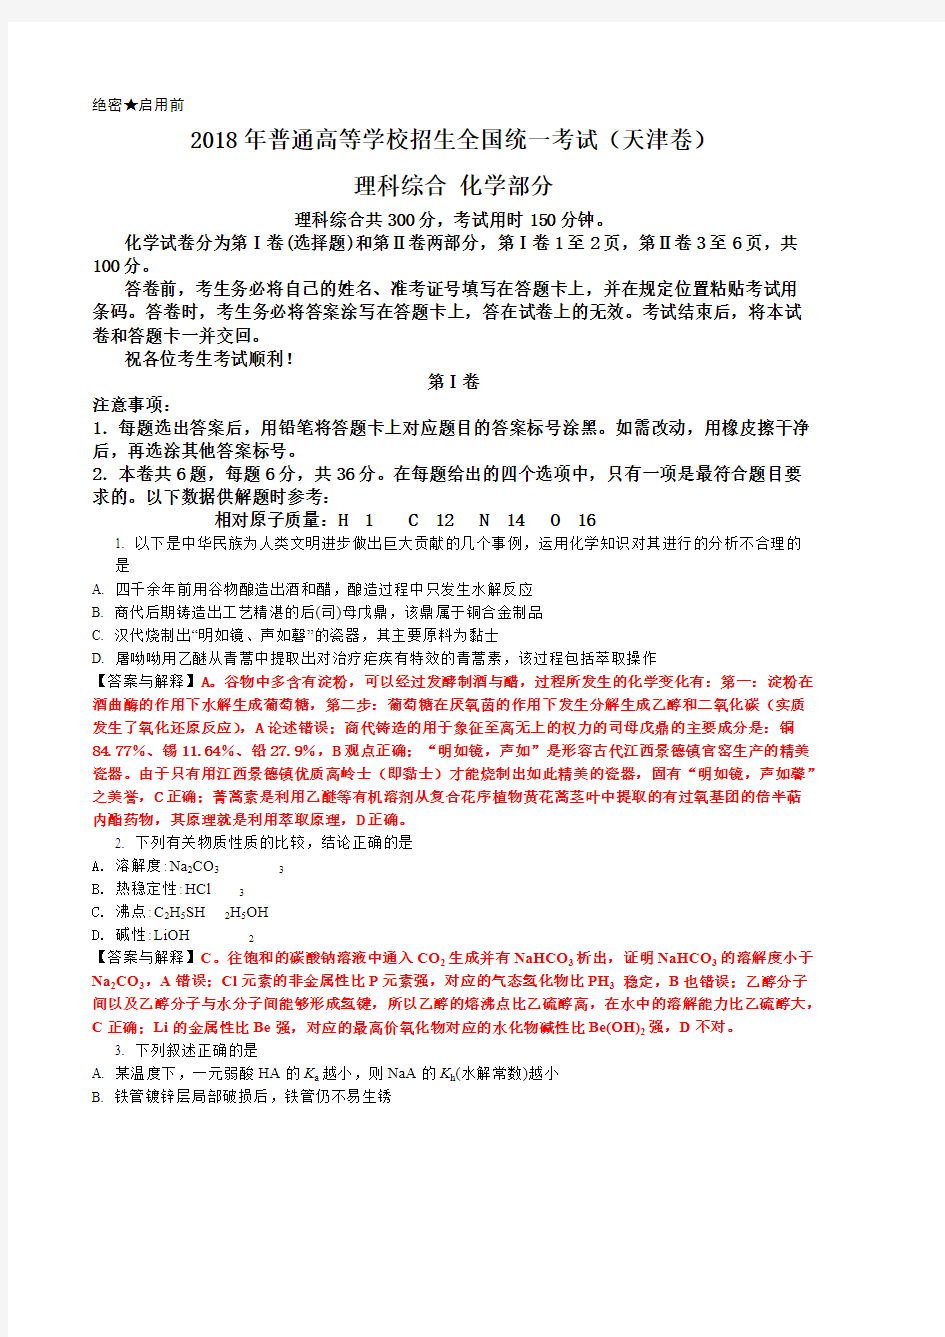 2018年天津高考试卷化学试题与答案及解释(可打印修改) (2)